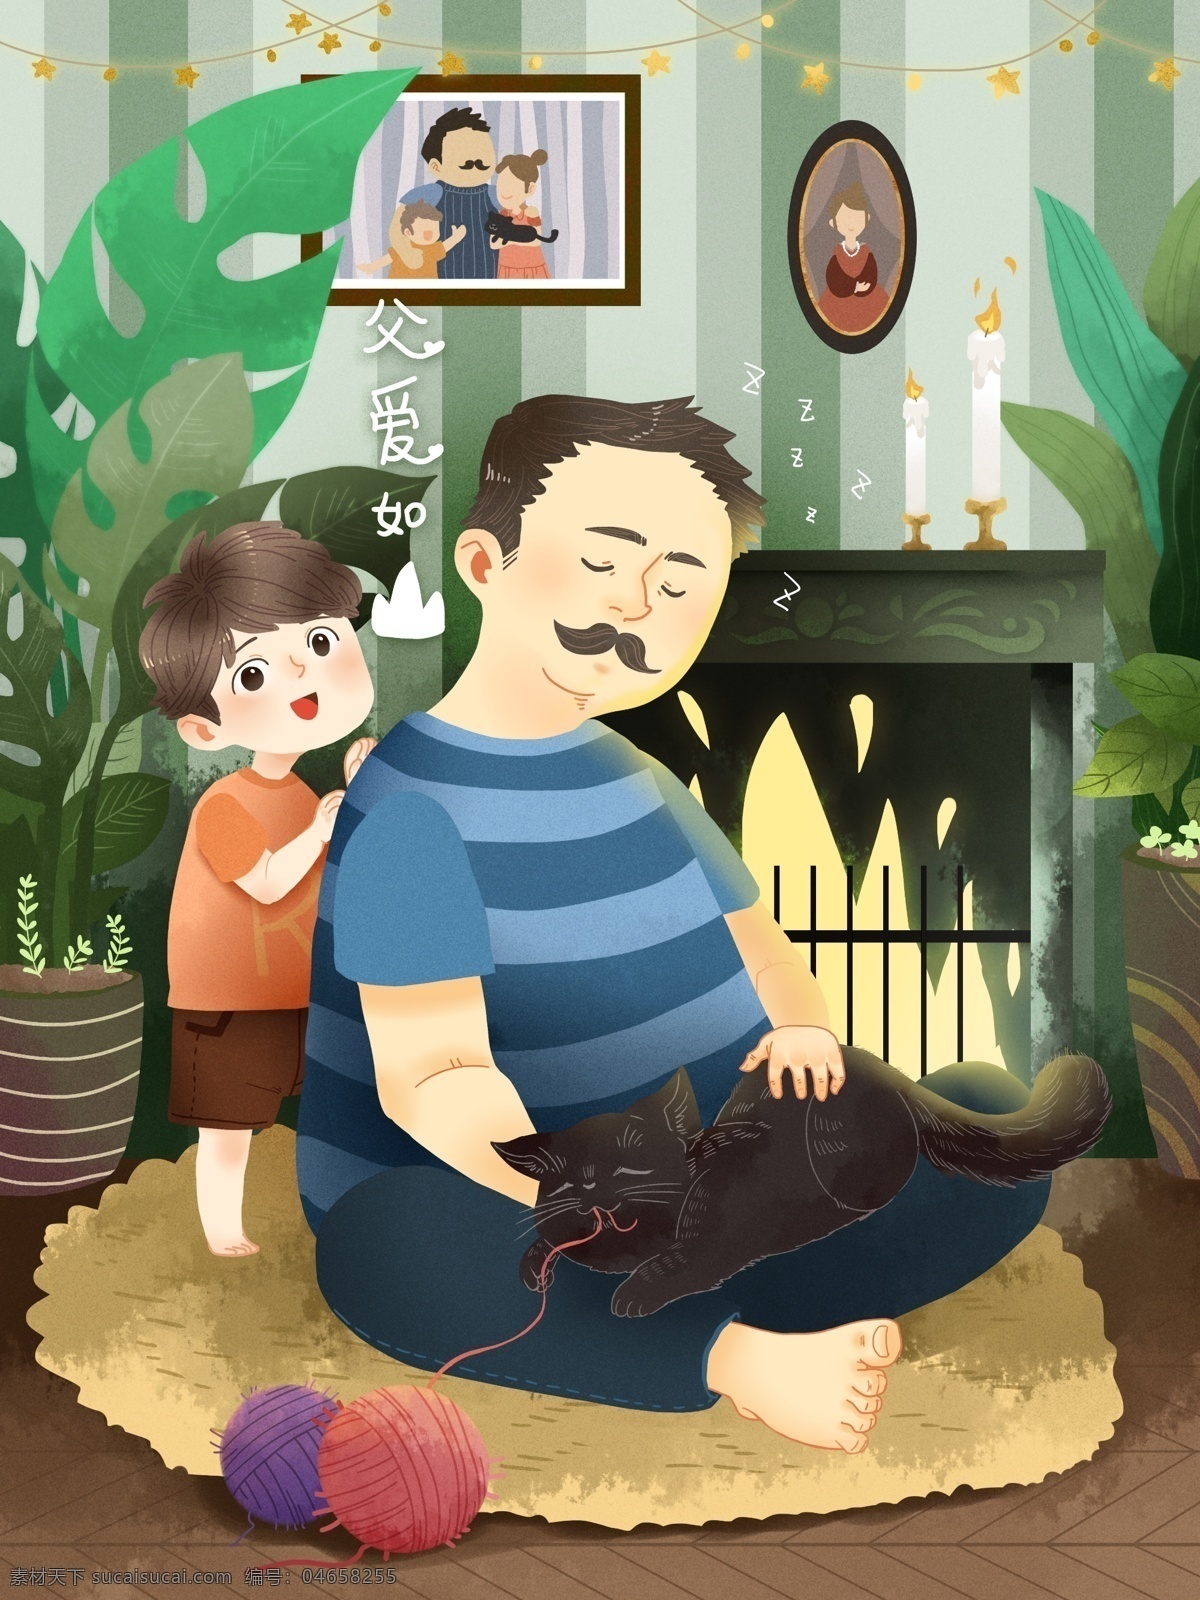 父亲节 儿子 爸爸 捶背 父爱 如山 节日 快乐 父亲 温馨 壁炉 蜡烛 全家照片 植物 地毯 猫